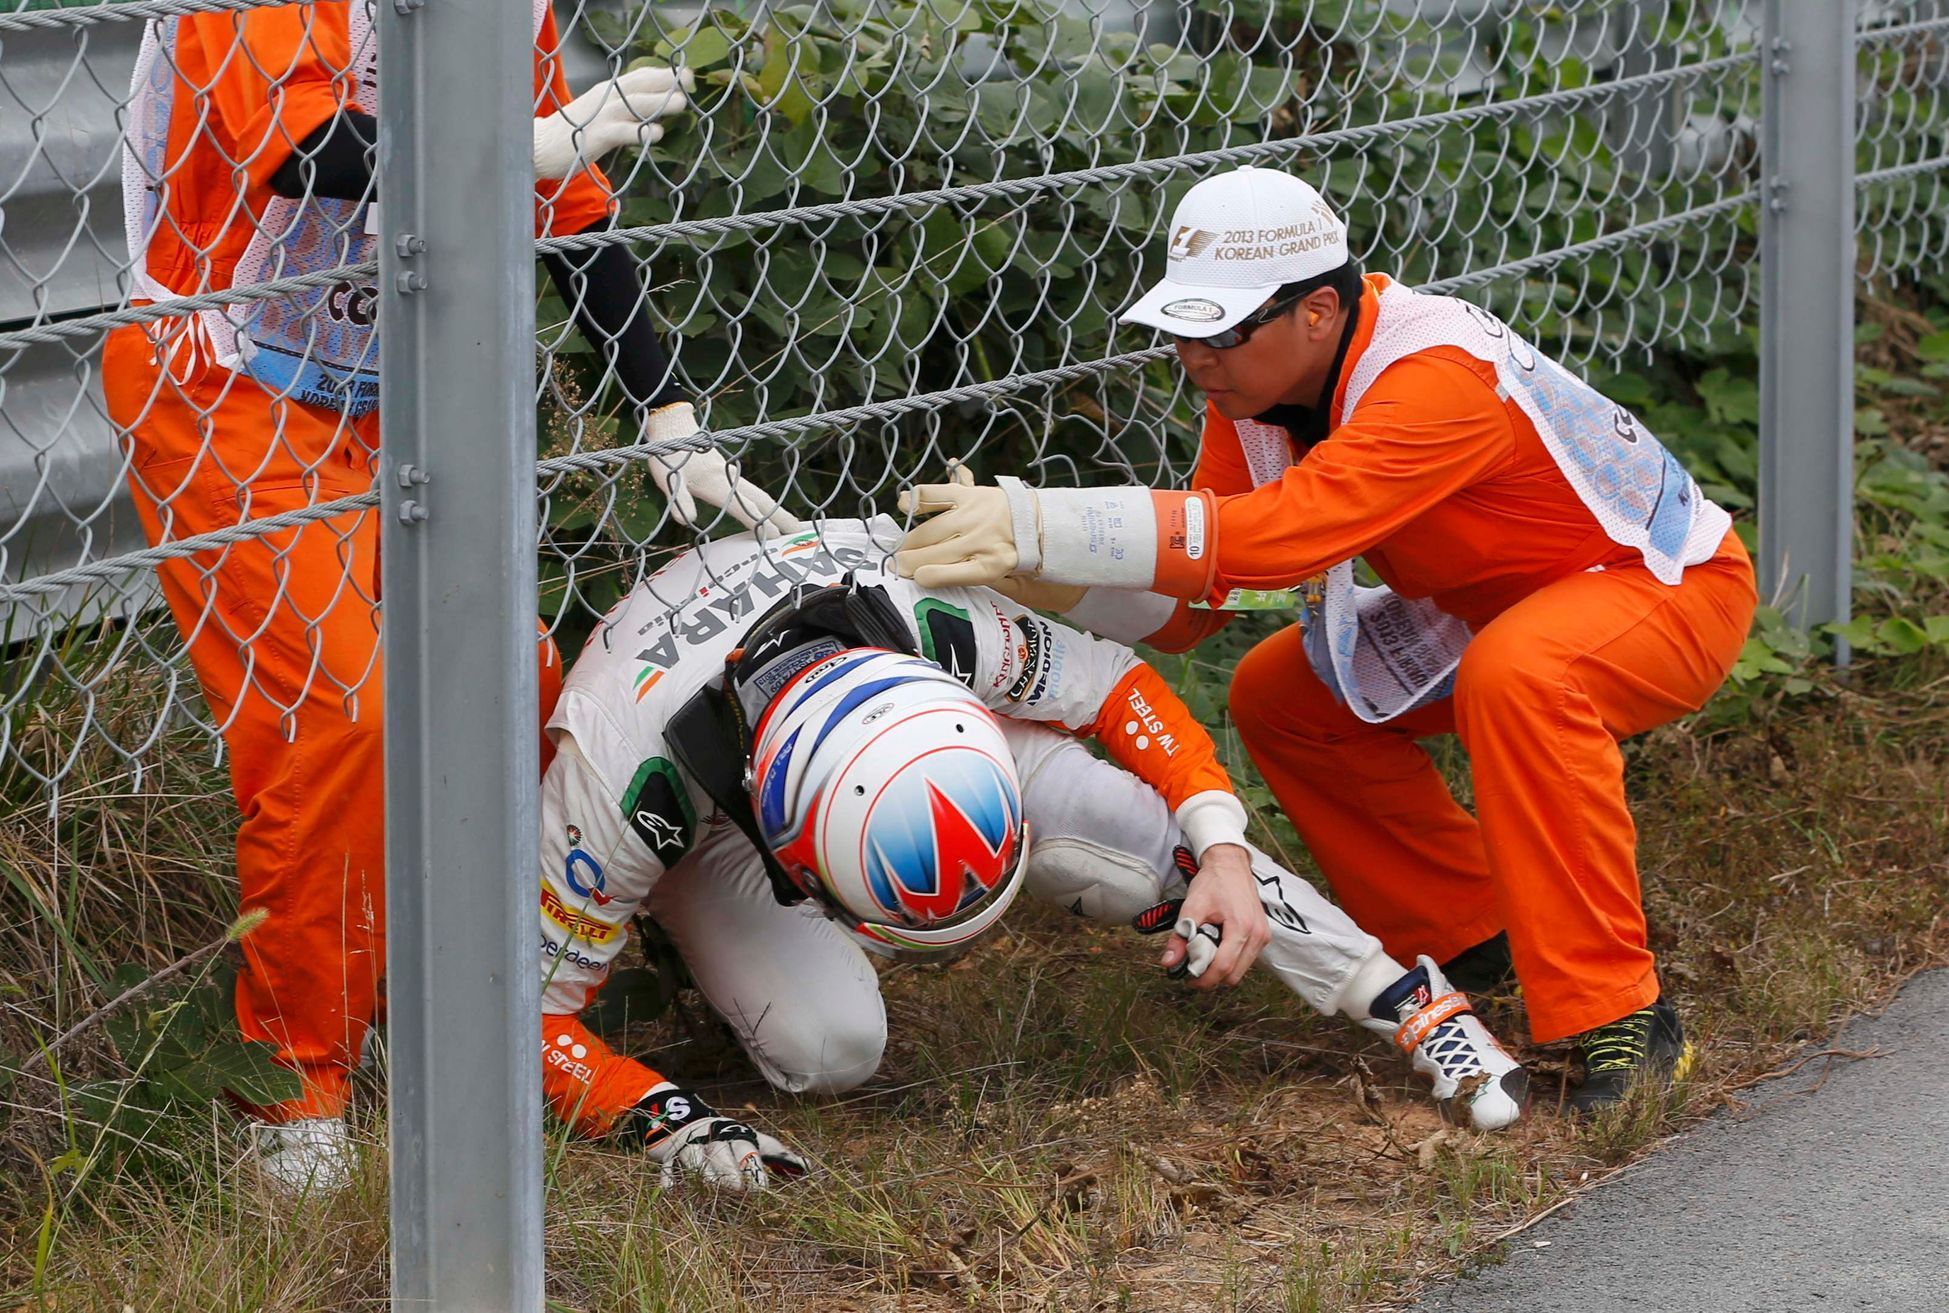 F1, VC Koreje 2013: Paul di Resta, Force India